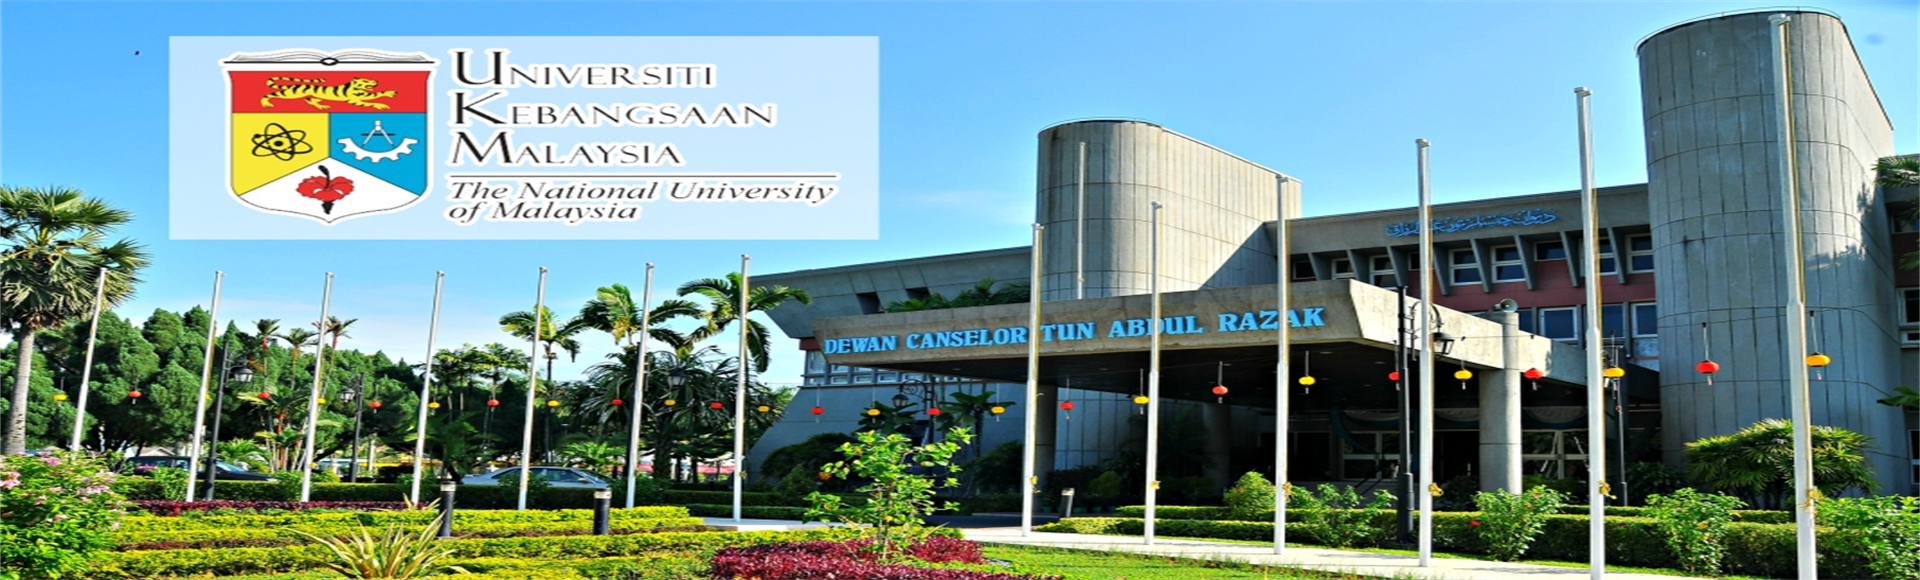 马来亚国立大学